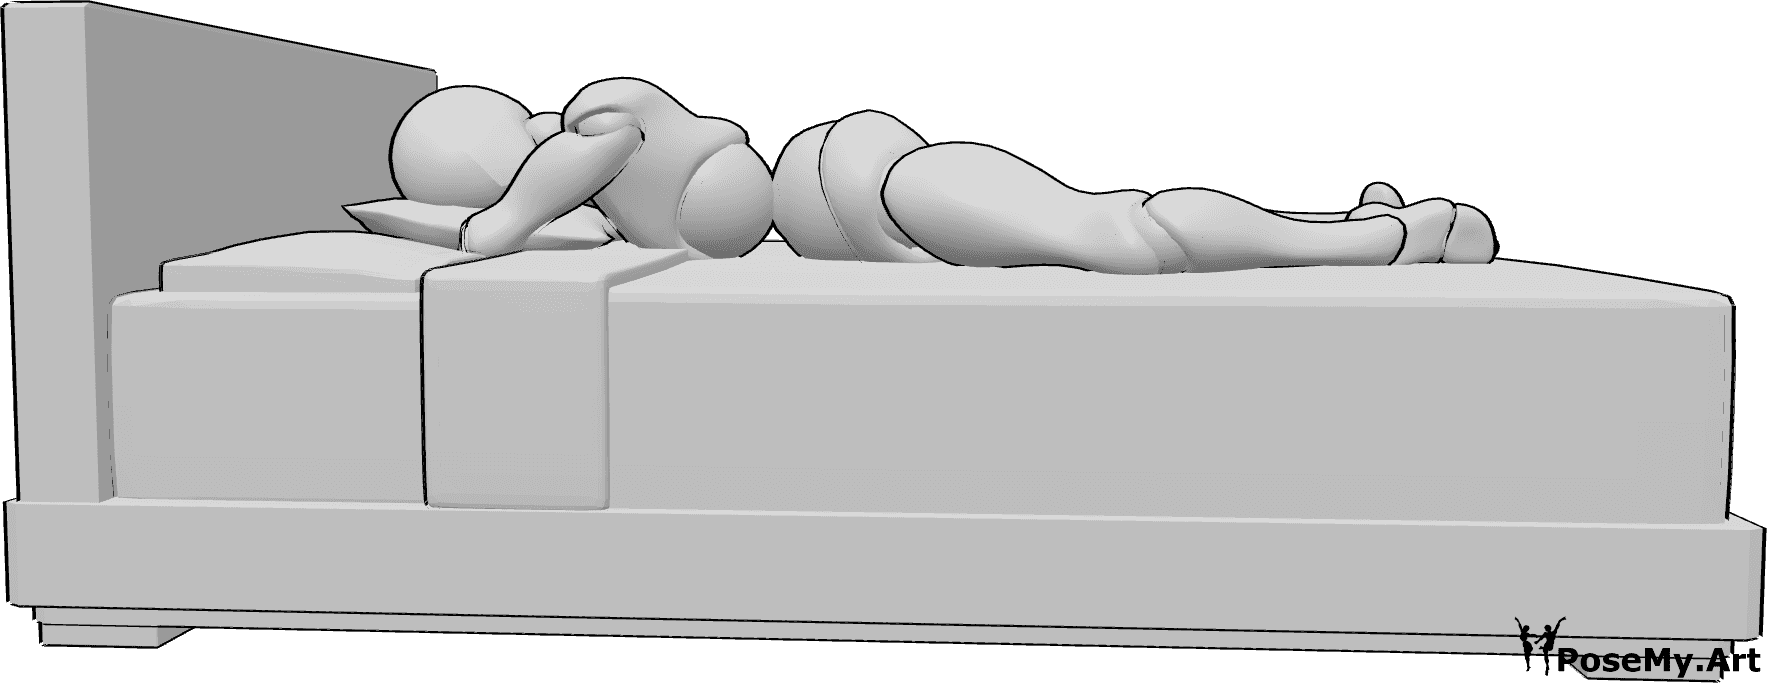 Référence des poses- Femme allongée sur un lit - La femme est allongée sur le lit, sur le ventre, la tête reposant sur un oreiller.